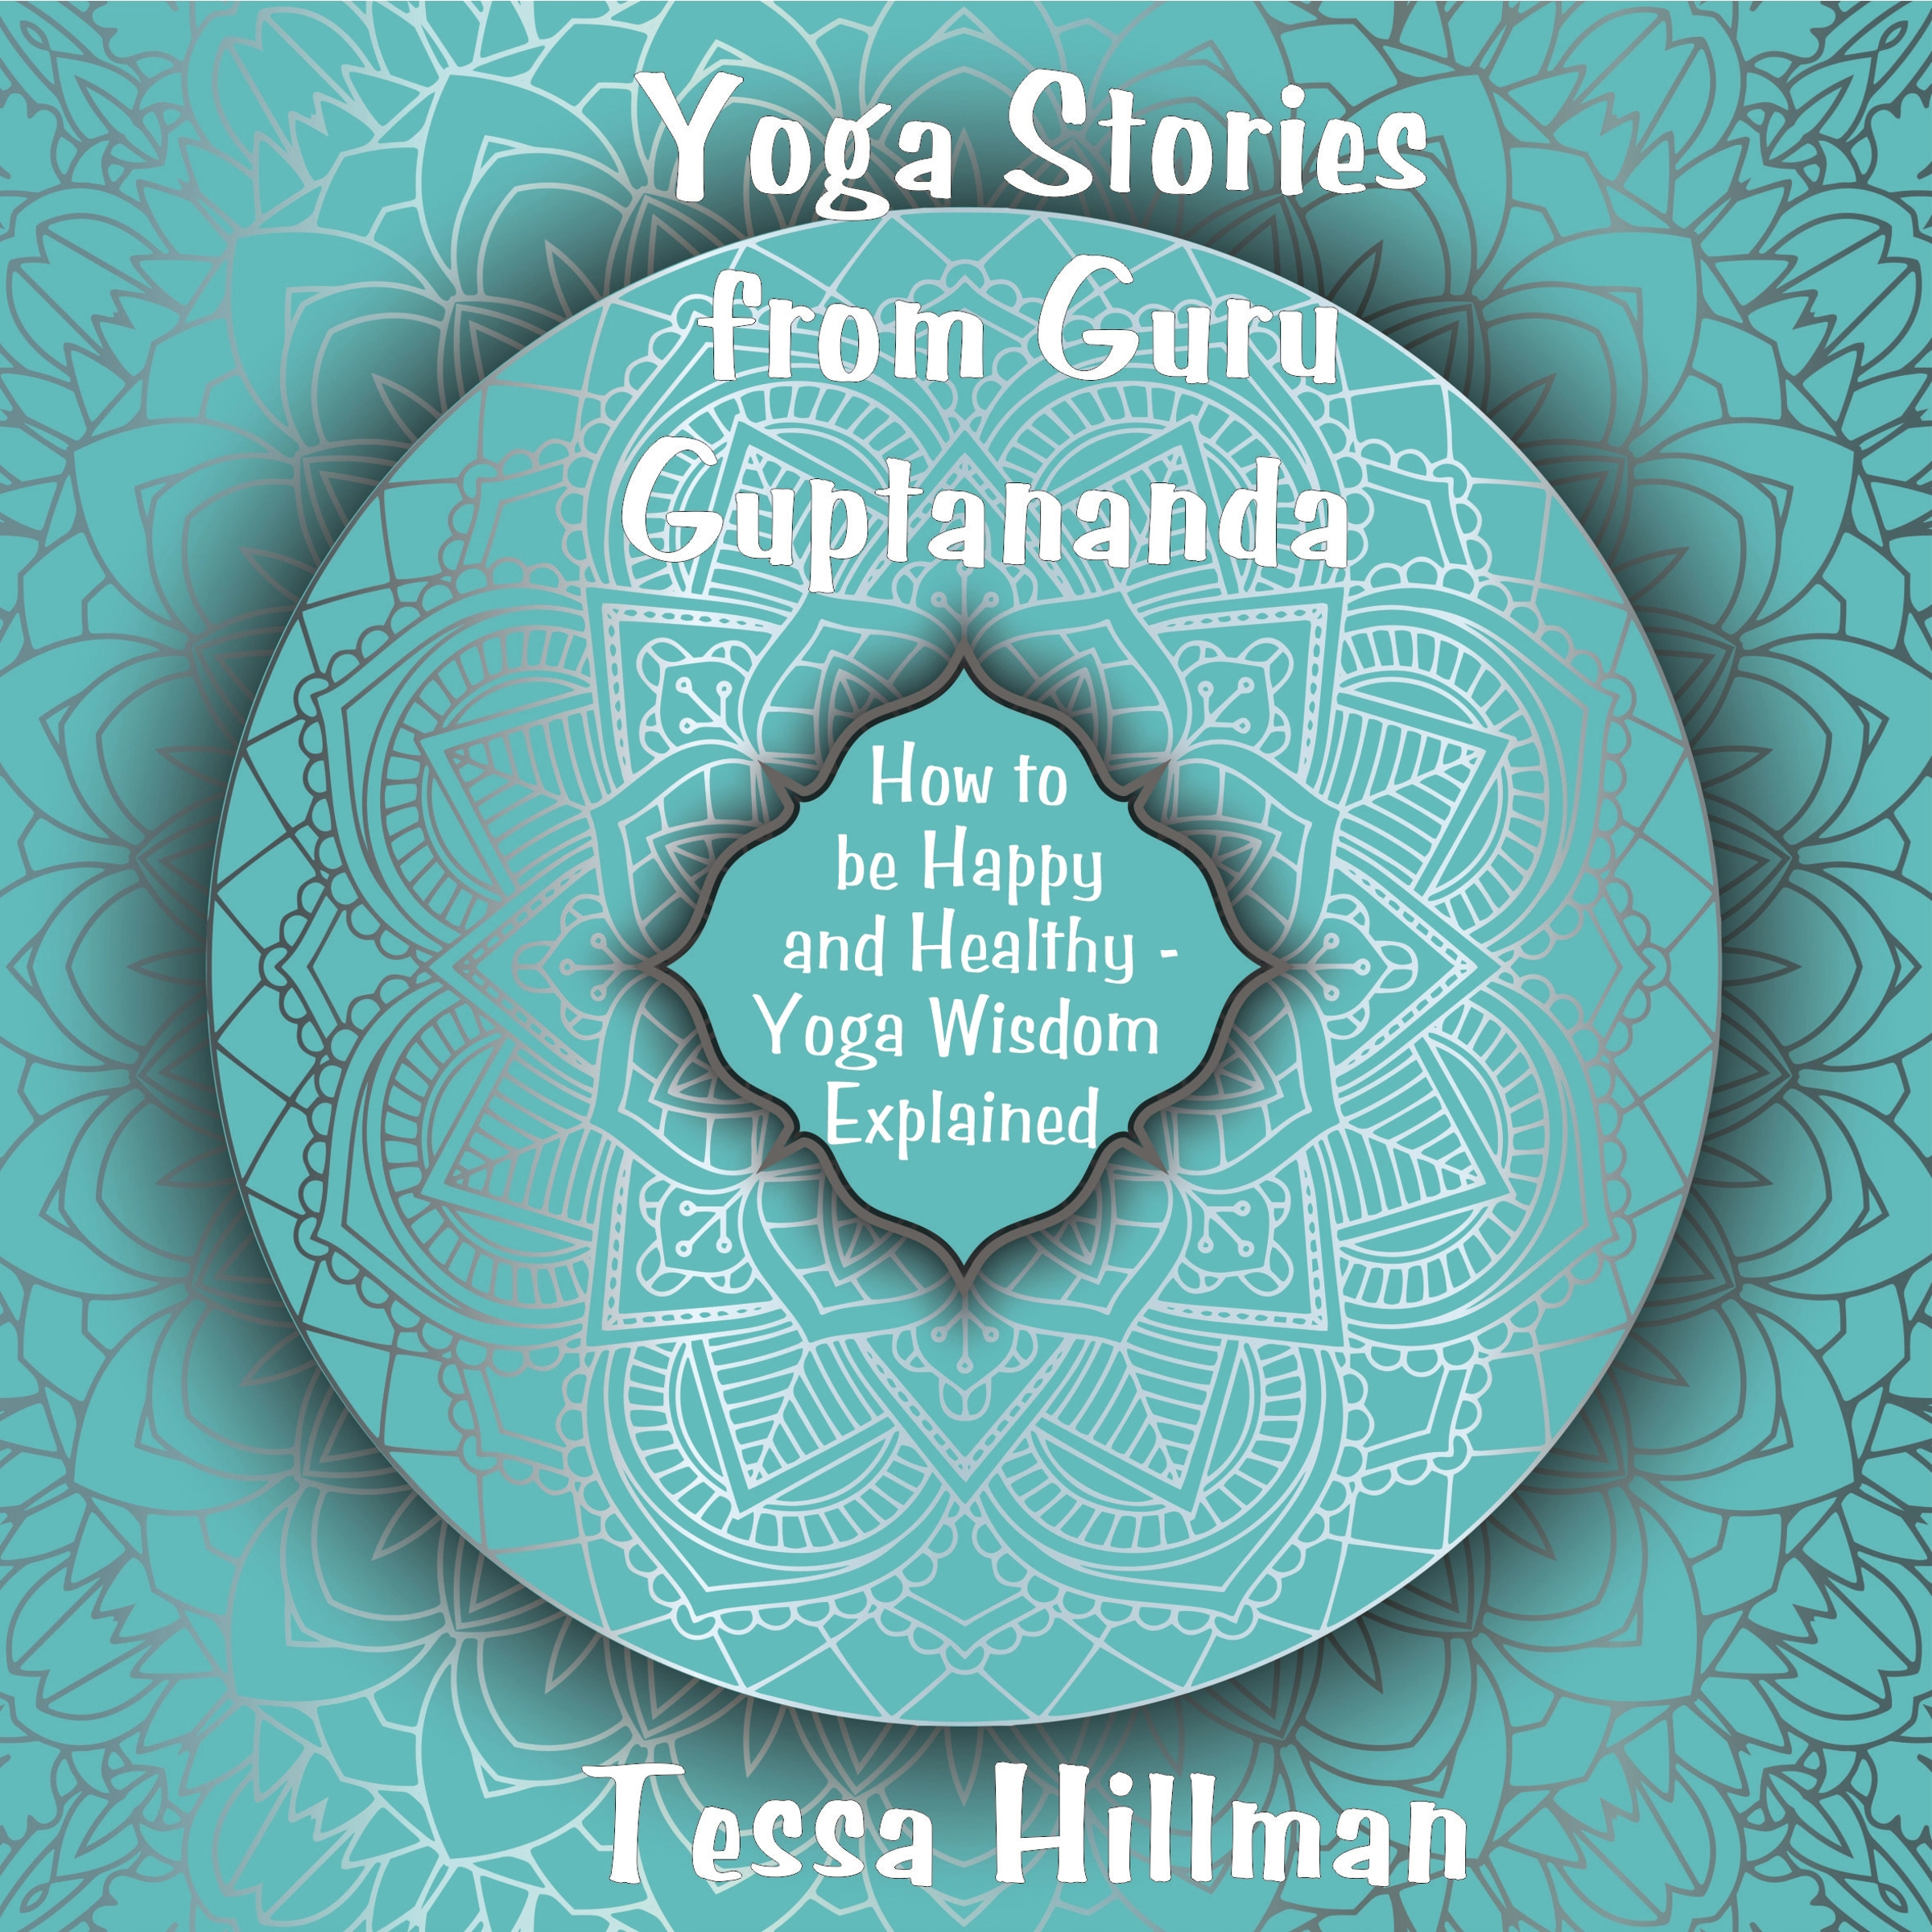 Yoga Stories from Guru Guptananda by Tessa Hillman Audiobook